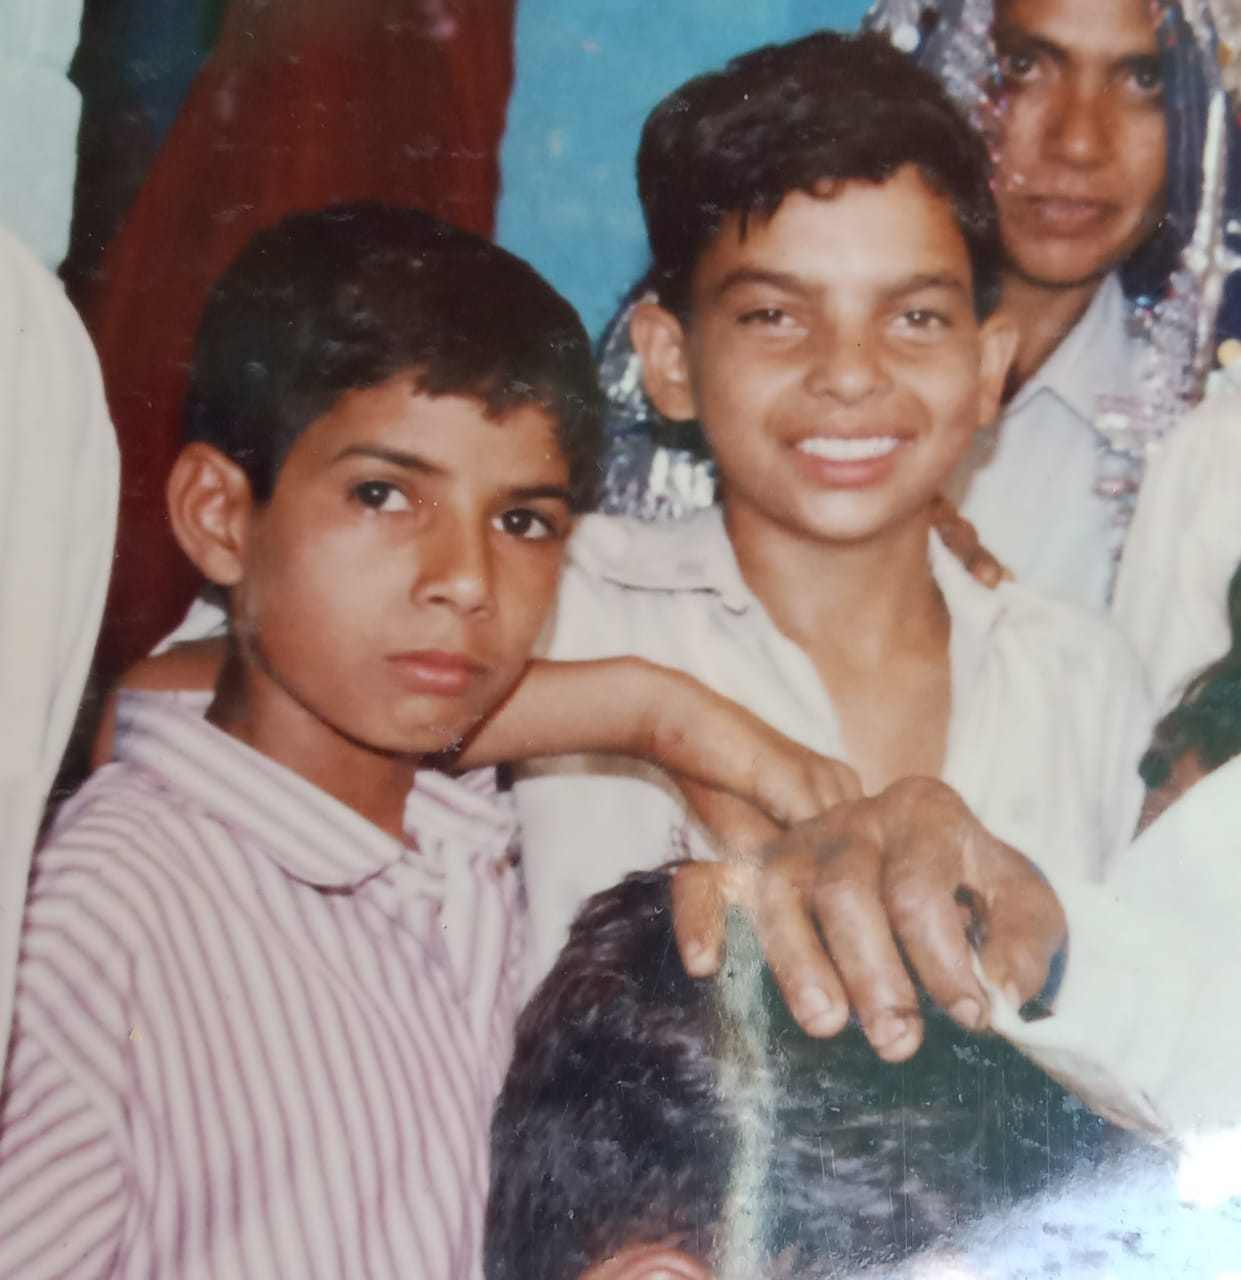 Naik Sandeep Kaliraman during his childhood days